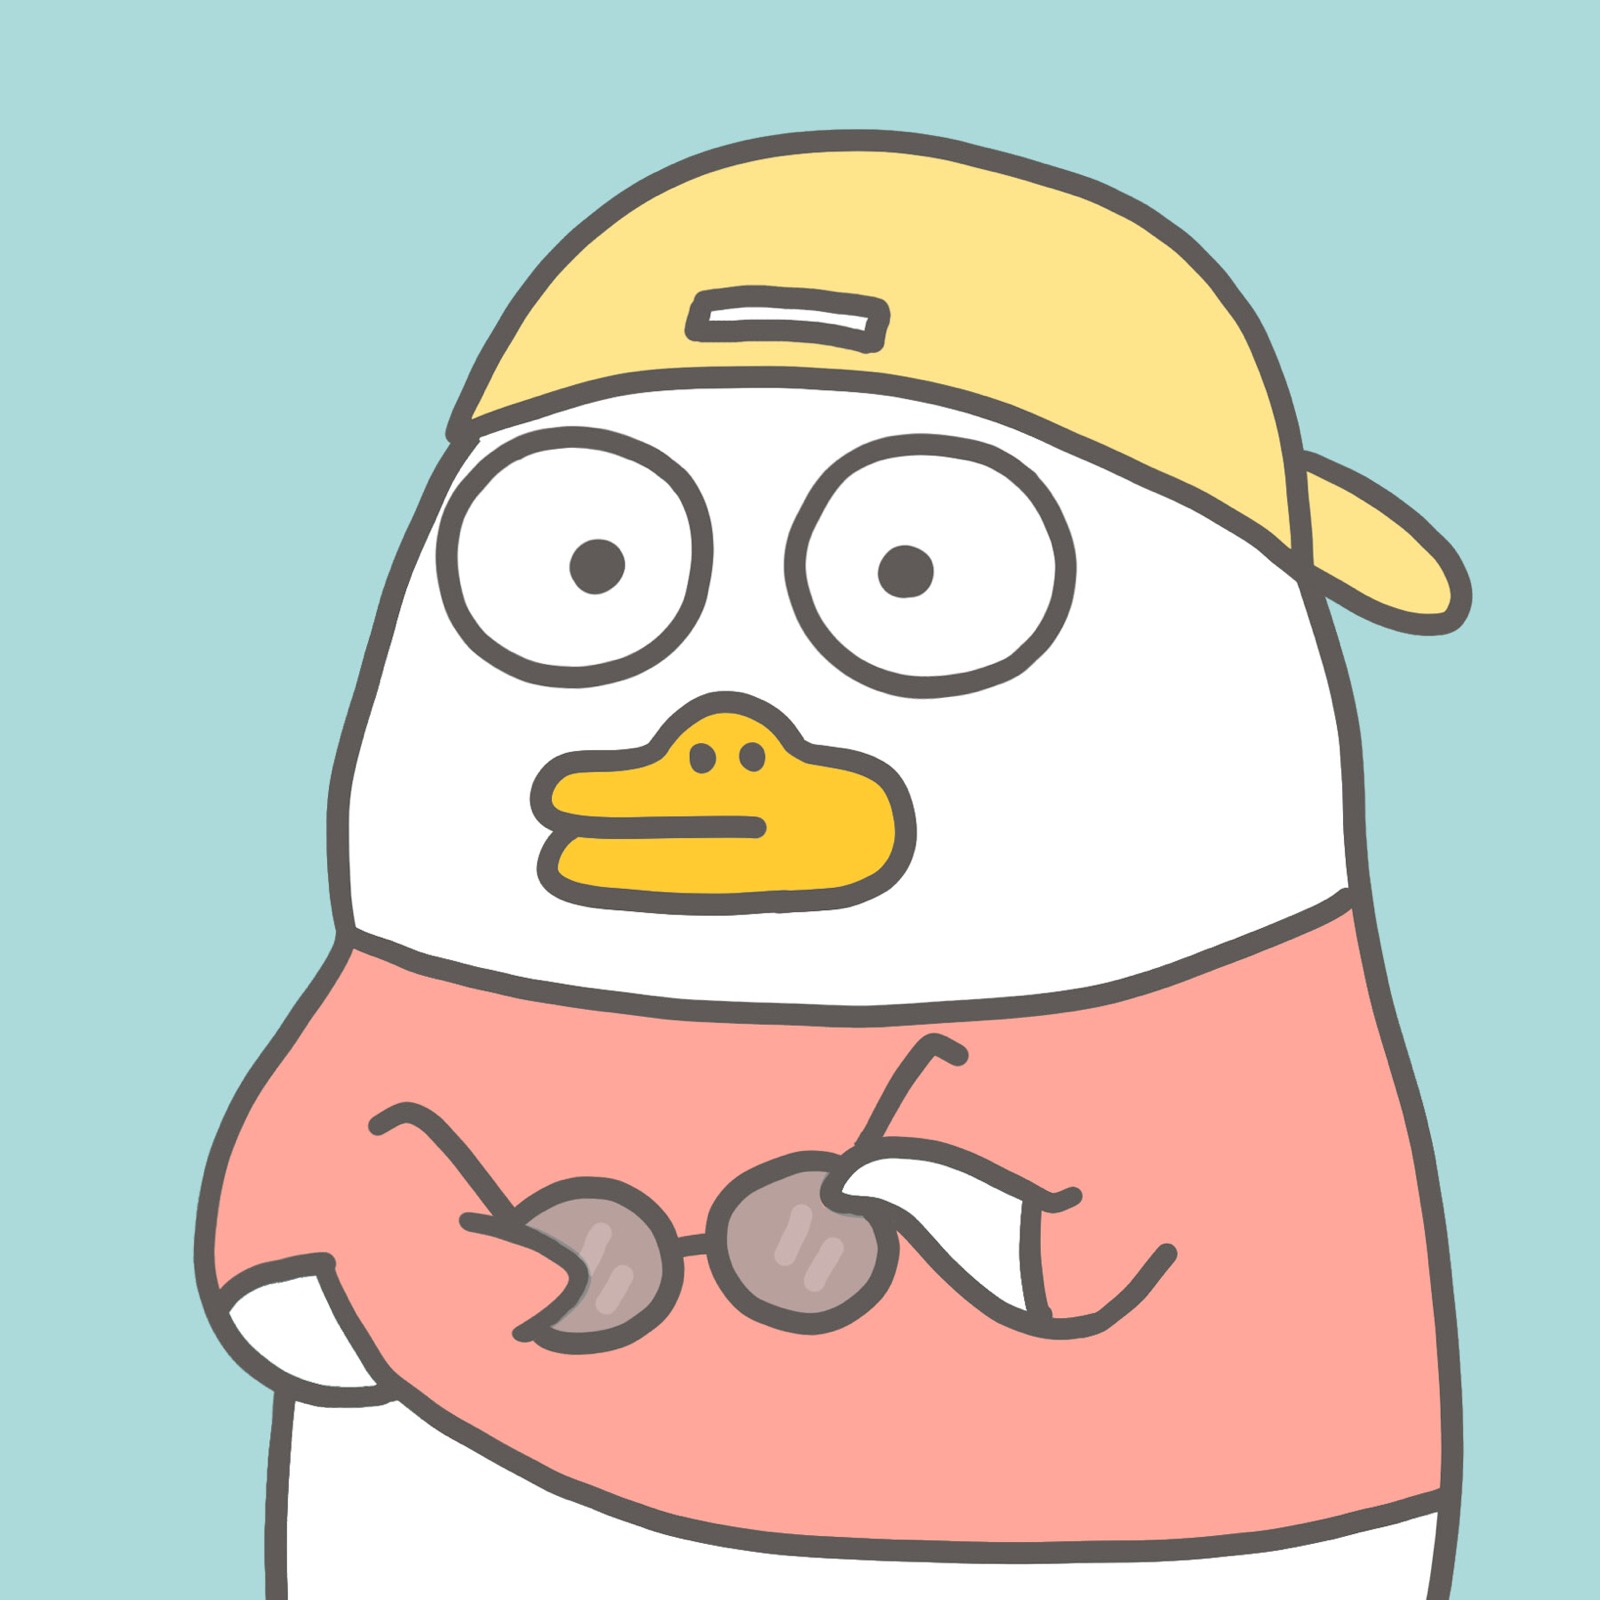 小黄小鸭动物角色卡通 库存例证. 插画 包括有 滑稽, 喜悦, 愉快, 农场, 鸭子, 微笑, 夹子, 例证 - 144603539